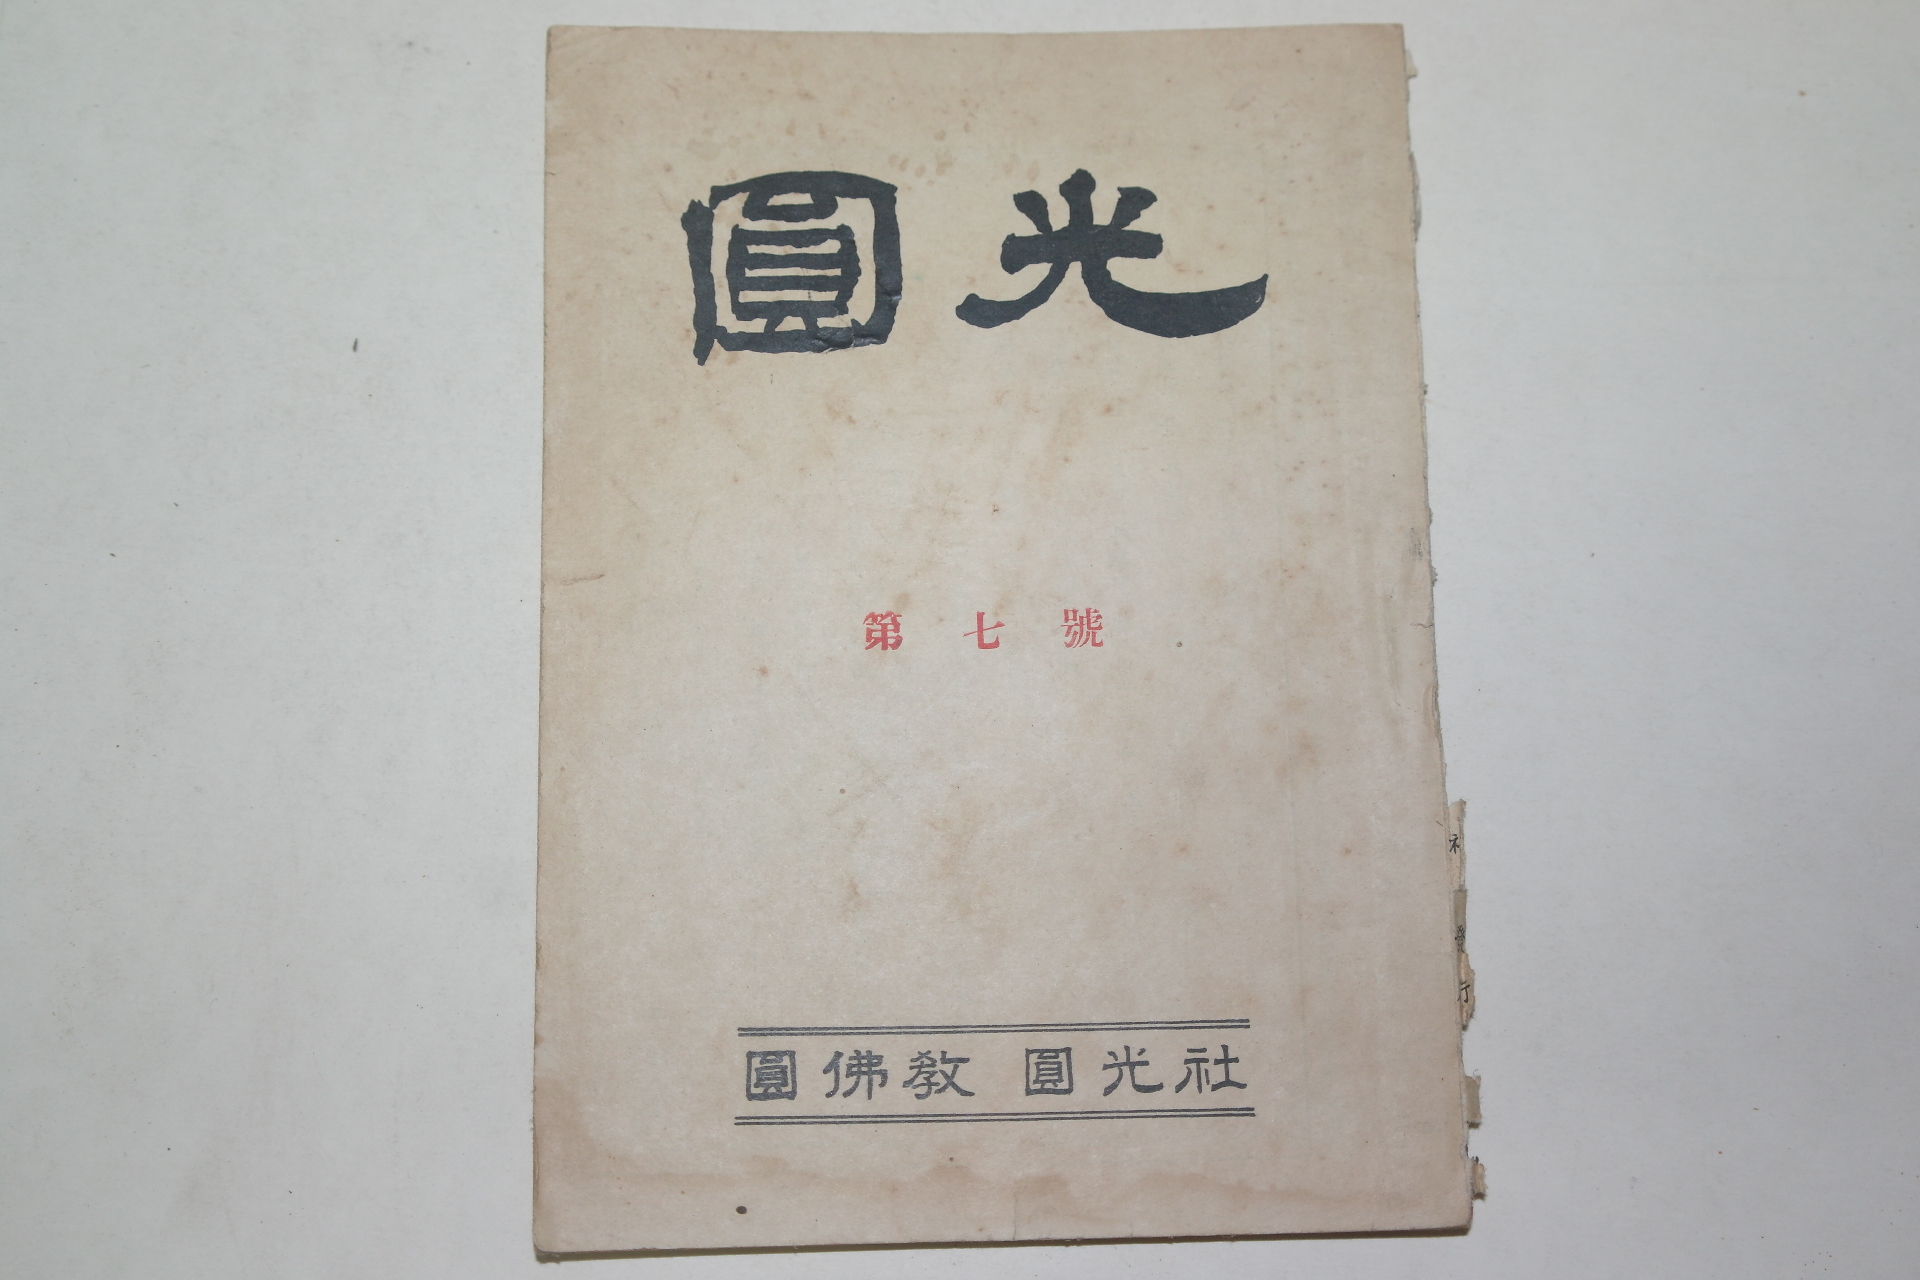 1954년(圓紀39年) 원불교잡지 원광(圓光) 제7호